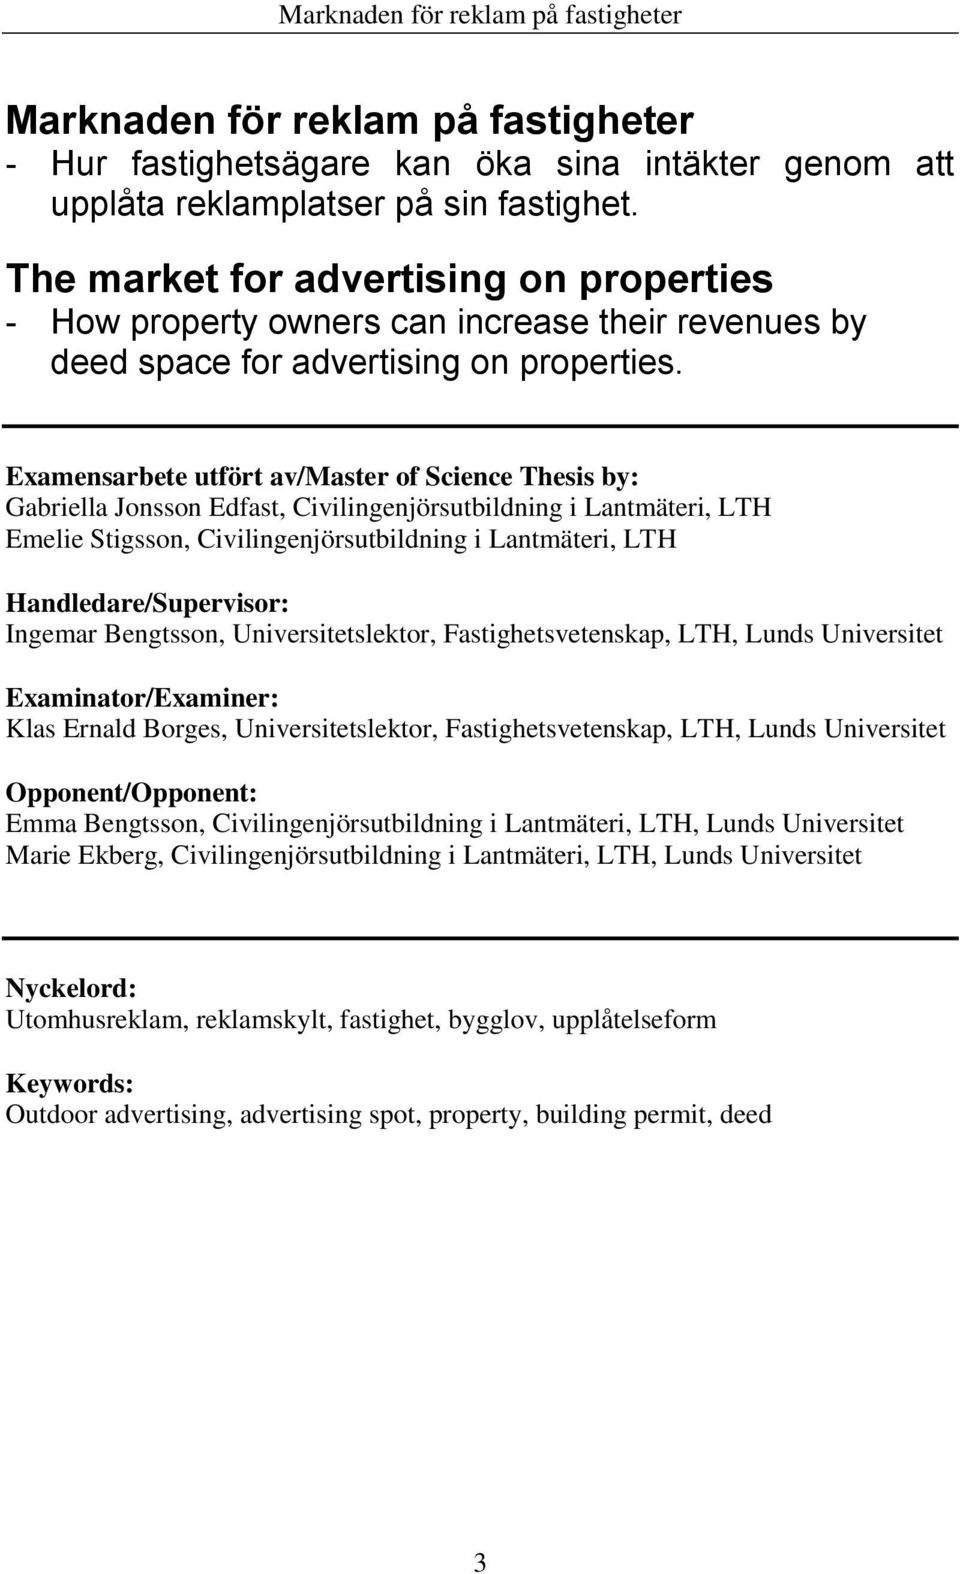 Marknaden för reklam på fastigheter - PDF Gratis nedladdning